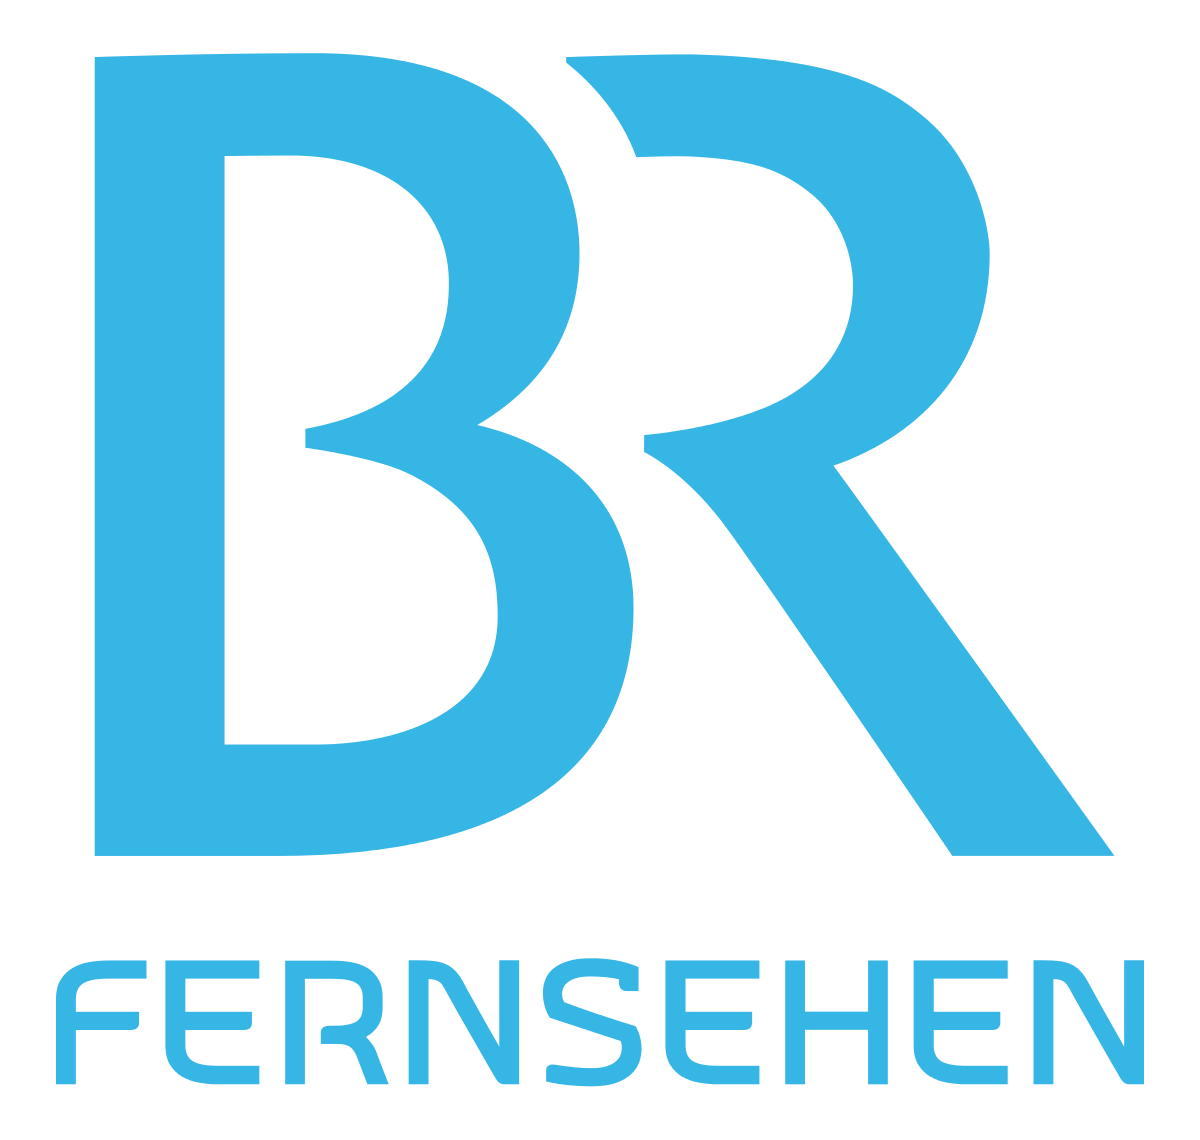 Fernsehprogramm Bayerischer Rundfunk